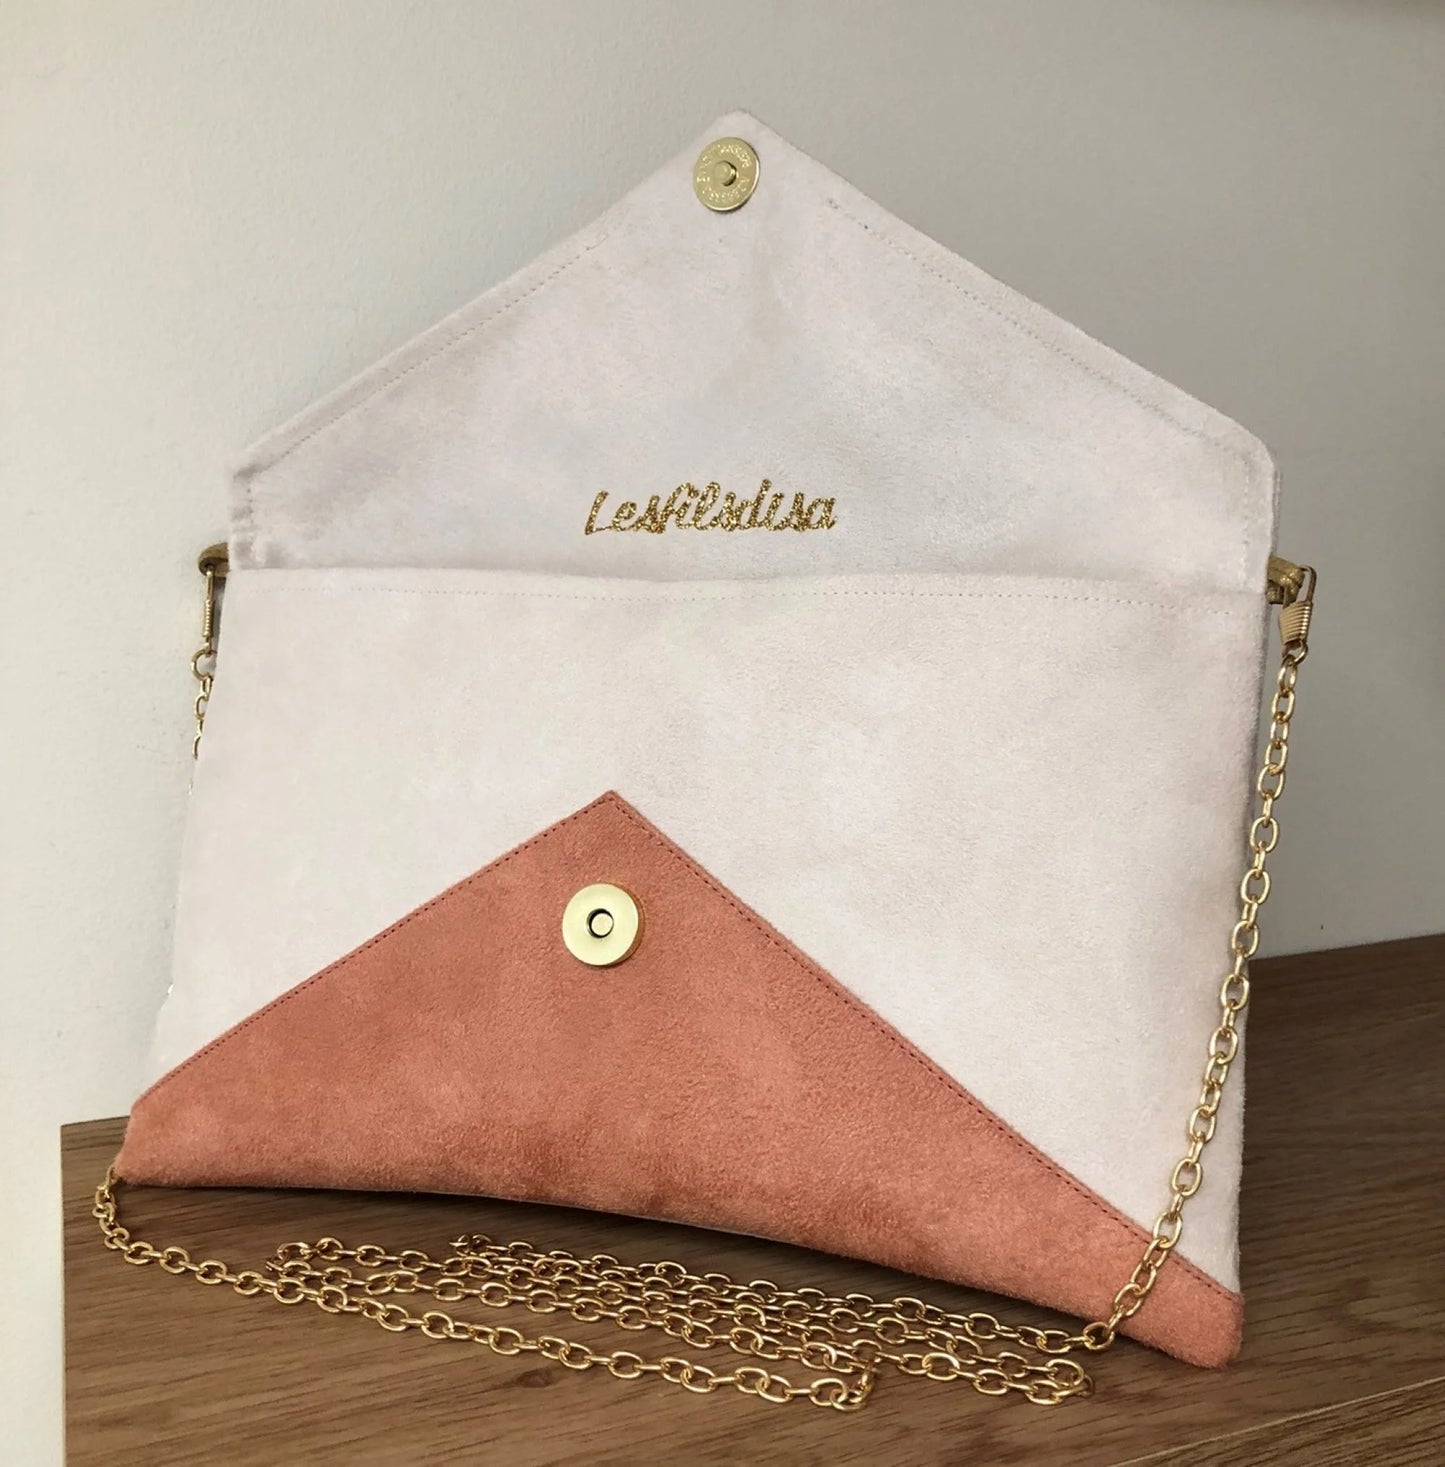 Le sac pochette Isa écru et rose saumon à paillettes dorées, avec chainette amovible, ouvert.